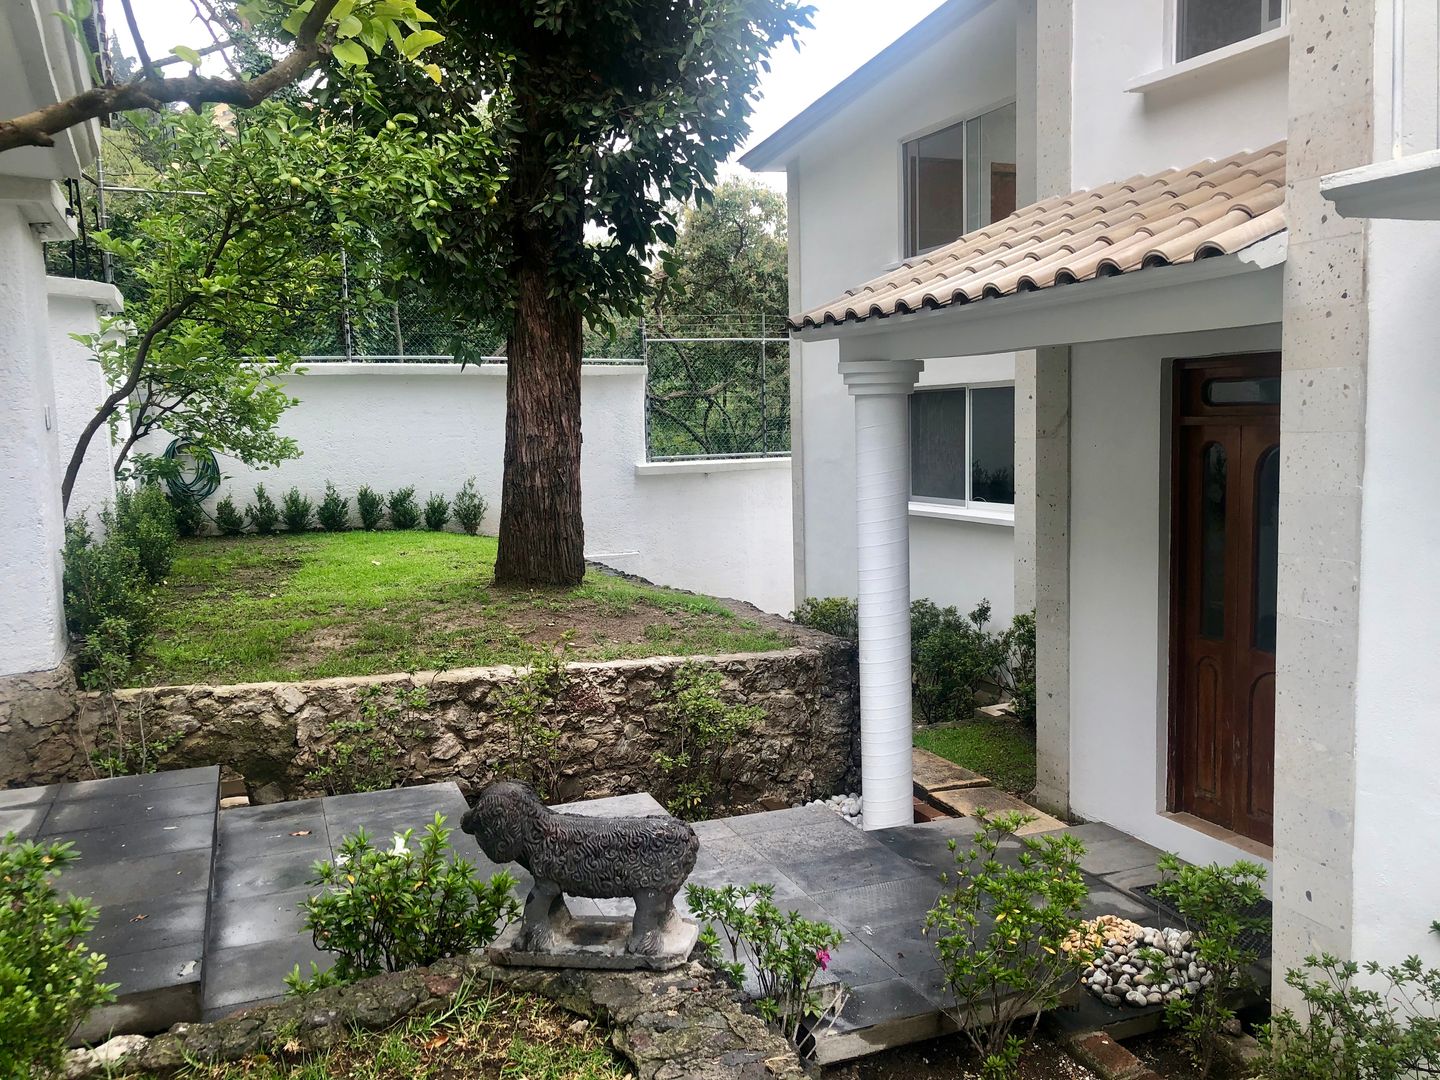 Proyecto y Remodelación de Casa Habitacion en CDMX, Arechiga y Asociados Arechiga y Asociados Detached home Bricks